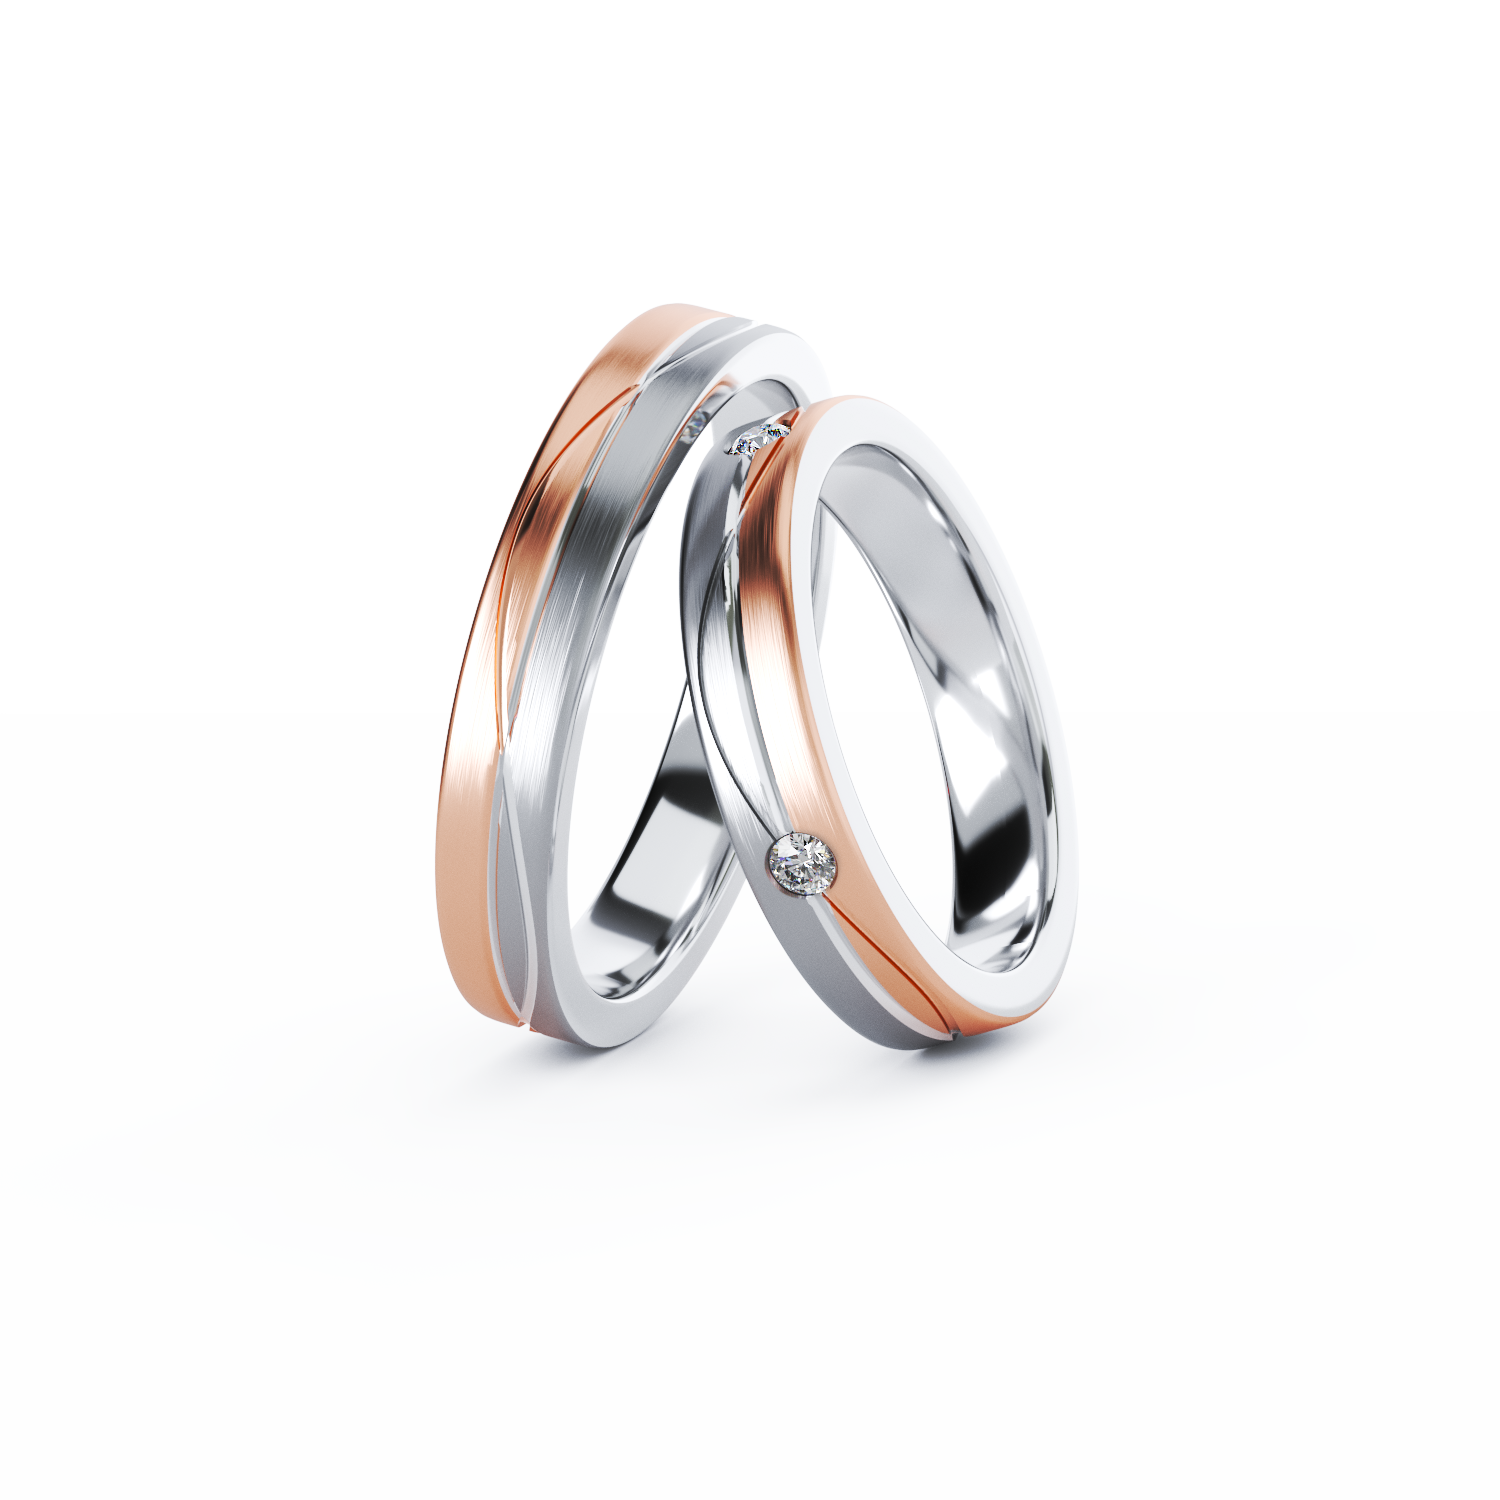 C311 gold wedding rings